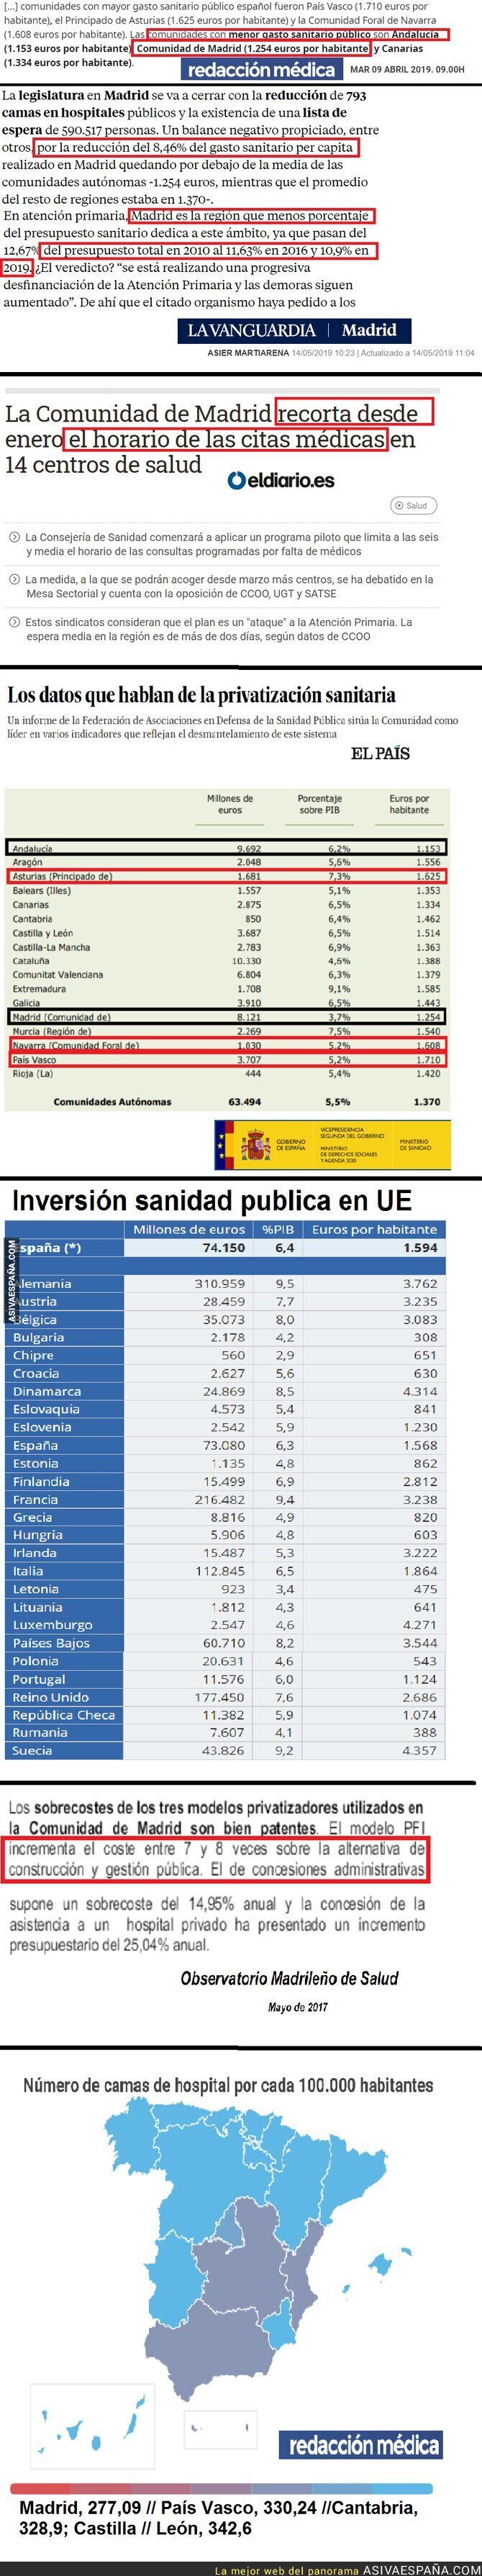 142964 - Pruebas de los recortes de la sanidad en Madrid. Comparación con otras comunidades y comparación con UE